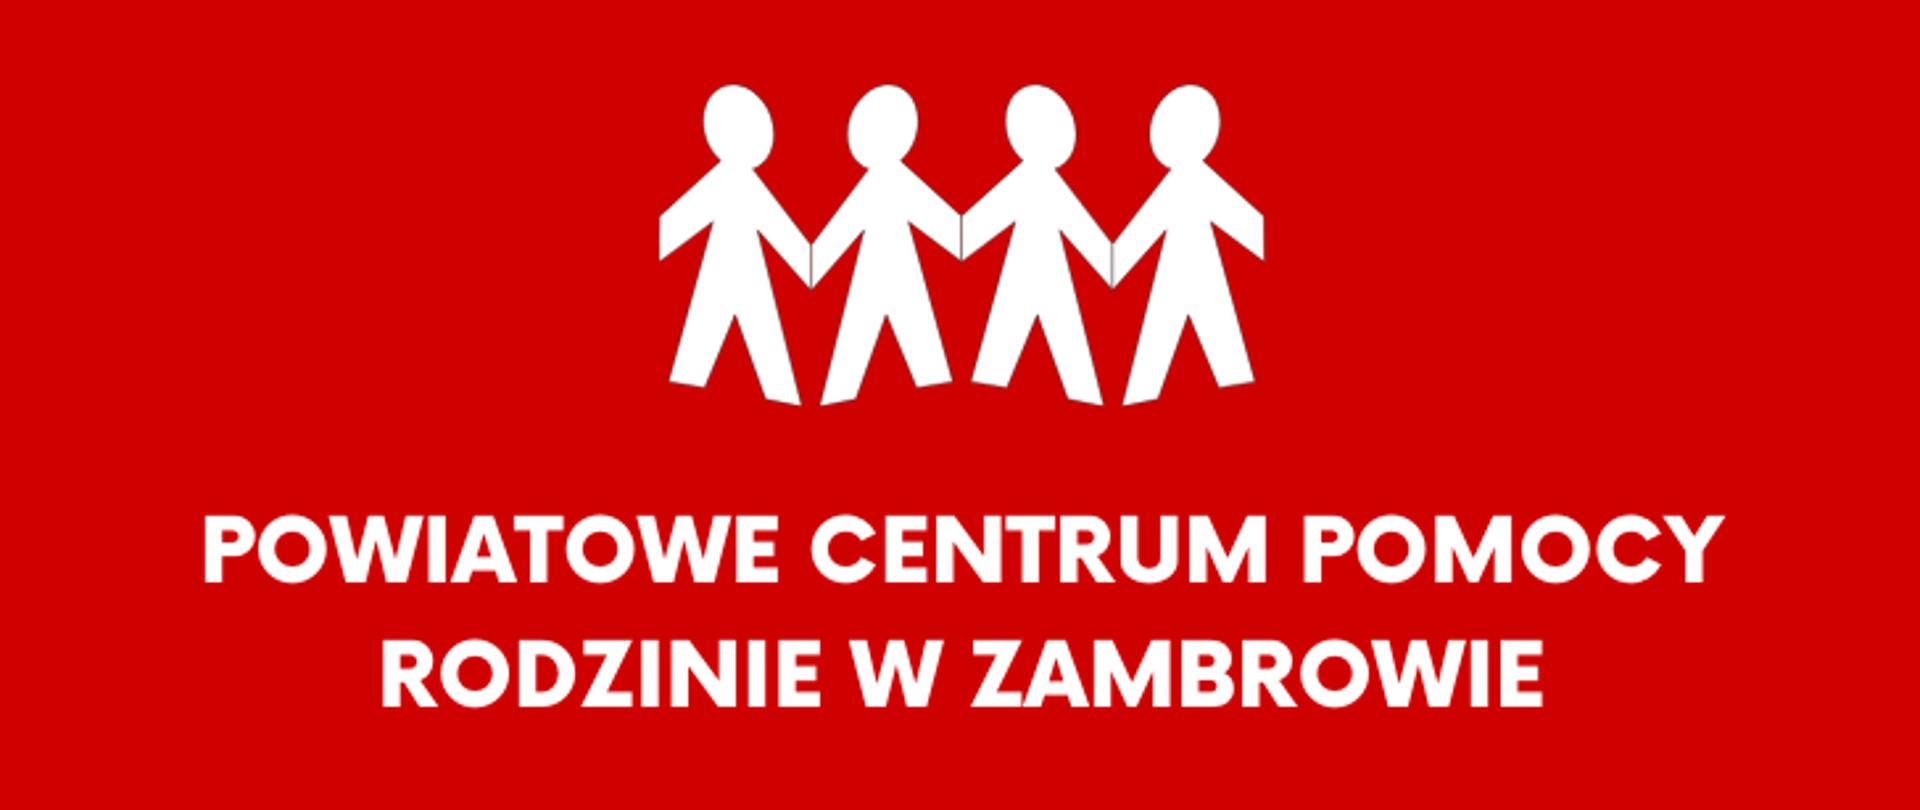 obrazek przedstawia banner PCPR, na czerwonym tle znajduje się białe logo i napis "POWIATOWE CENTRUM POMOCY RODZINIE W ZAMBROWIE"